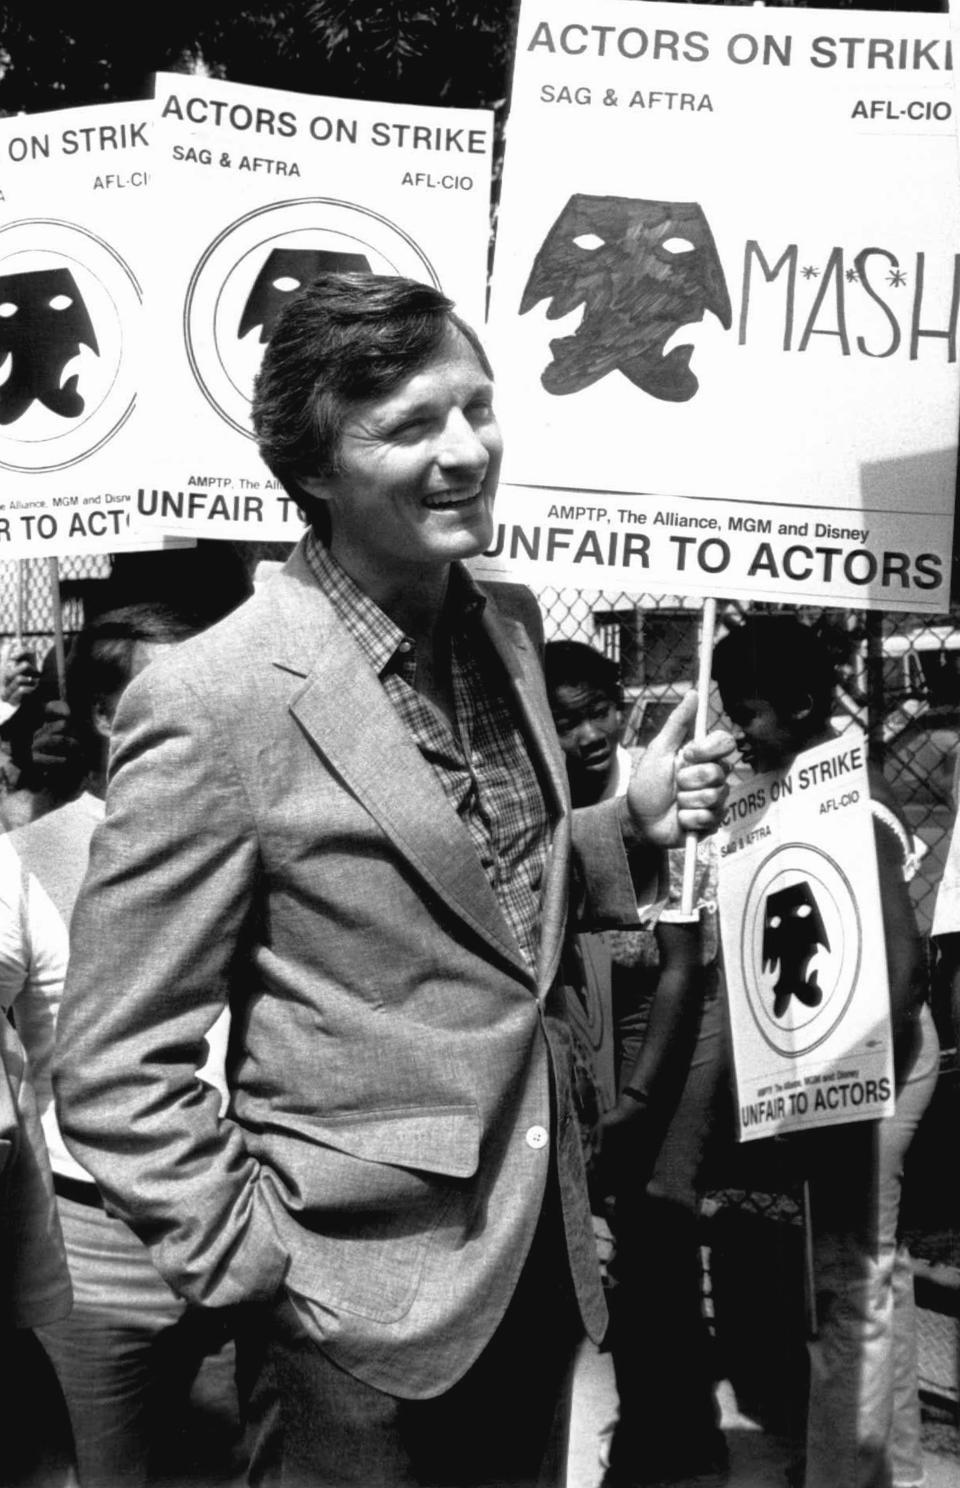 ARCHIVO - El actor Alan Alda, de la serie "M*A*S*H*", en una manifestación frente a los estudios Twentieth-Century Fox en Los Ángeles, el 6 de agosto de 1980. Alda dijo que los actores que han tenido éxito se lo deben a otros actores que se han unido a la huelga por salarios justos. (Foto AP/Randy Rasmussen)